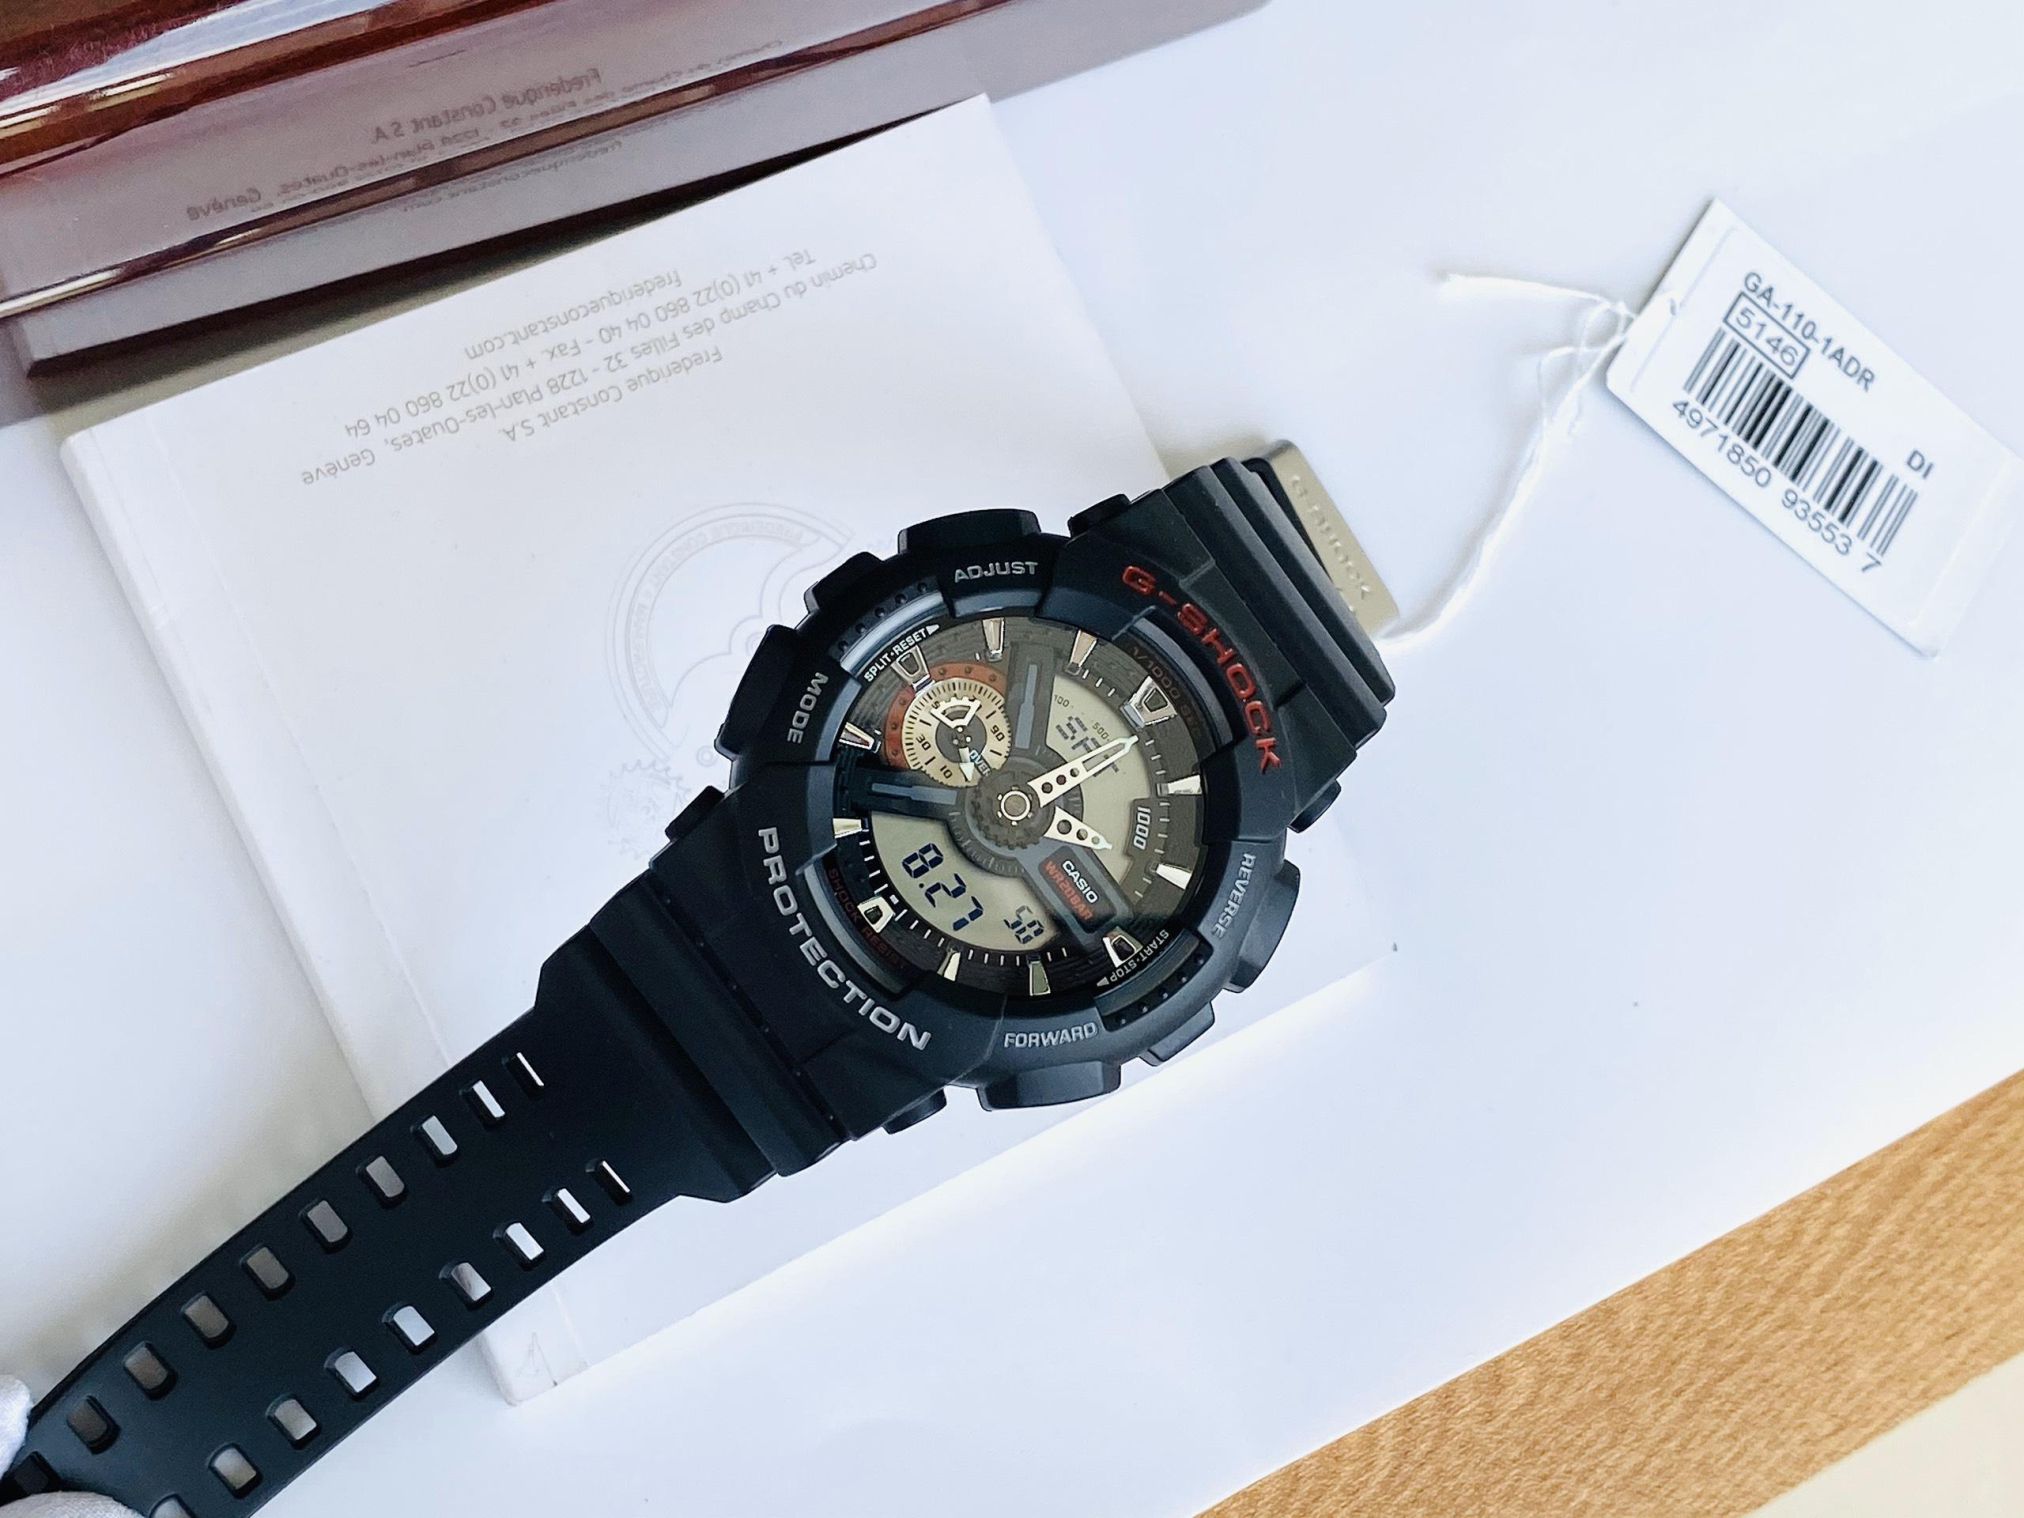 Cách chỉnh giờ đồng hồ Casio G-Shock GA 110-1A (GA-110-1ADR)